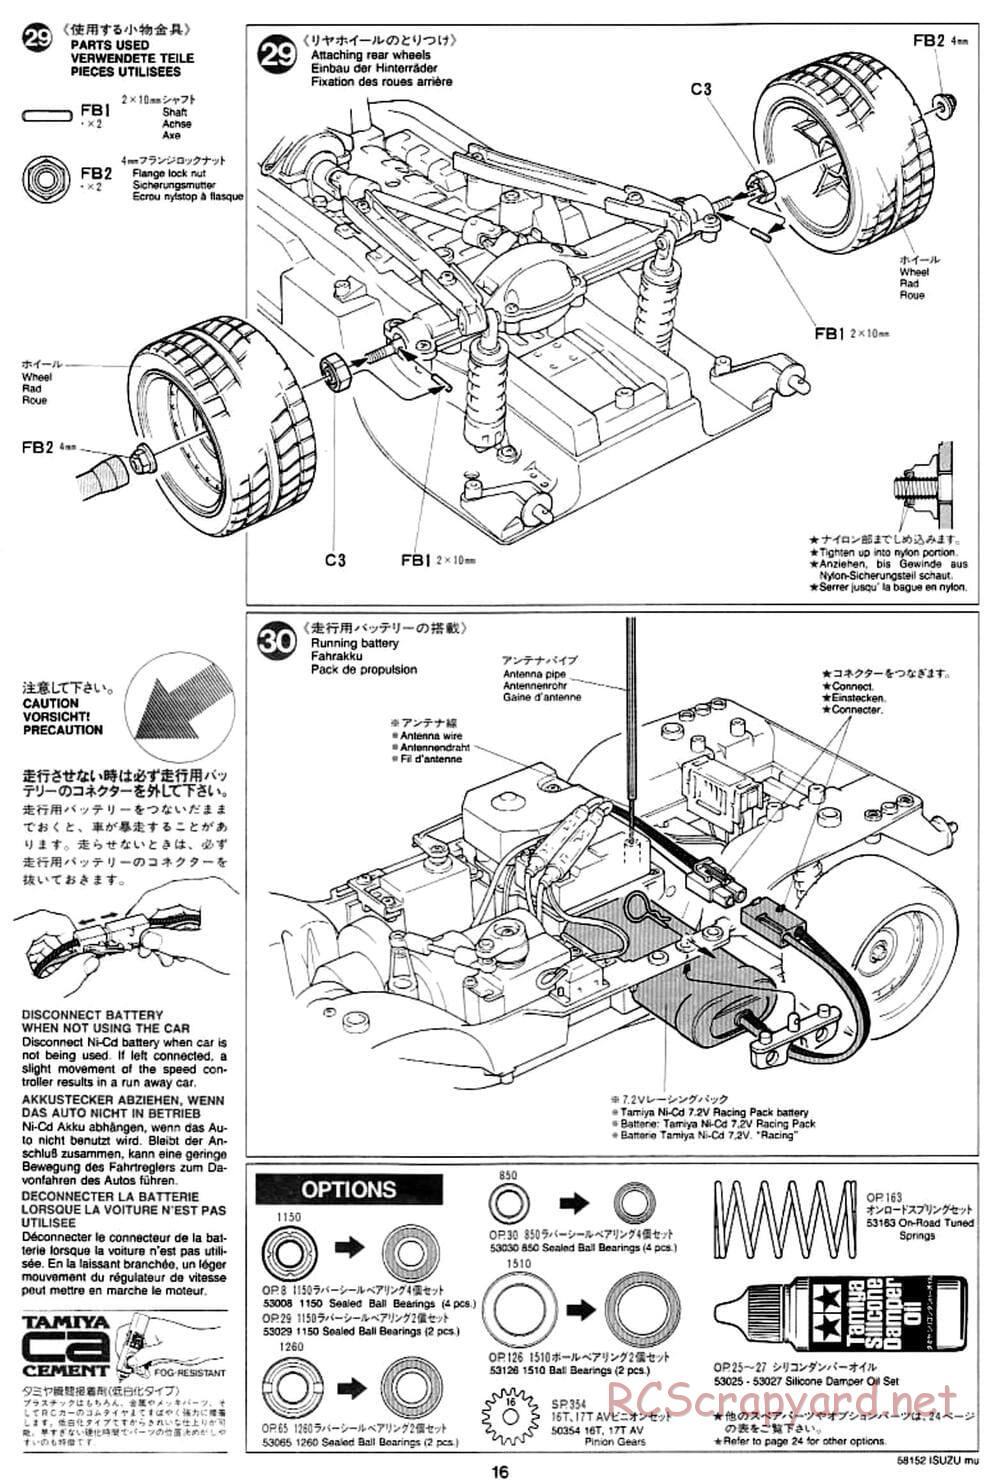 Tamiya - Isuzu Mu - CC-01 Chassis - Manual - Page 16